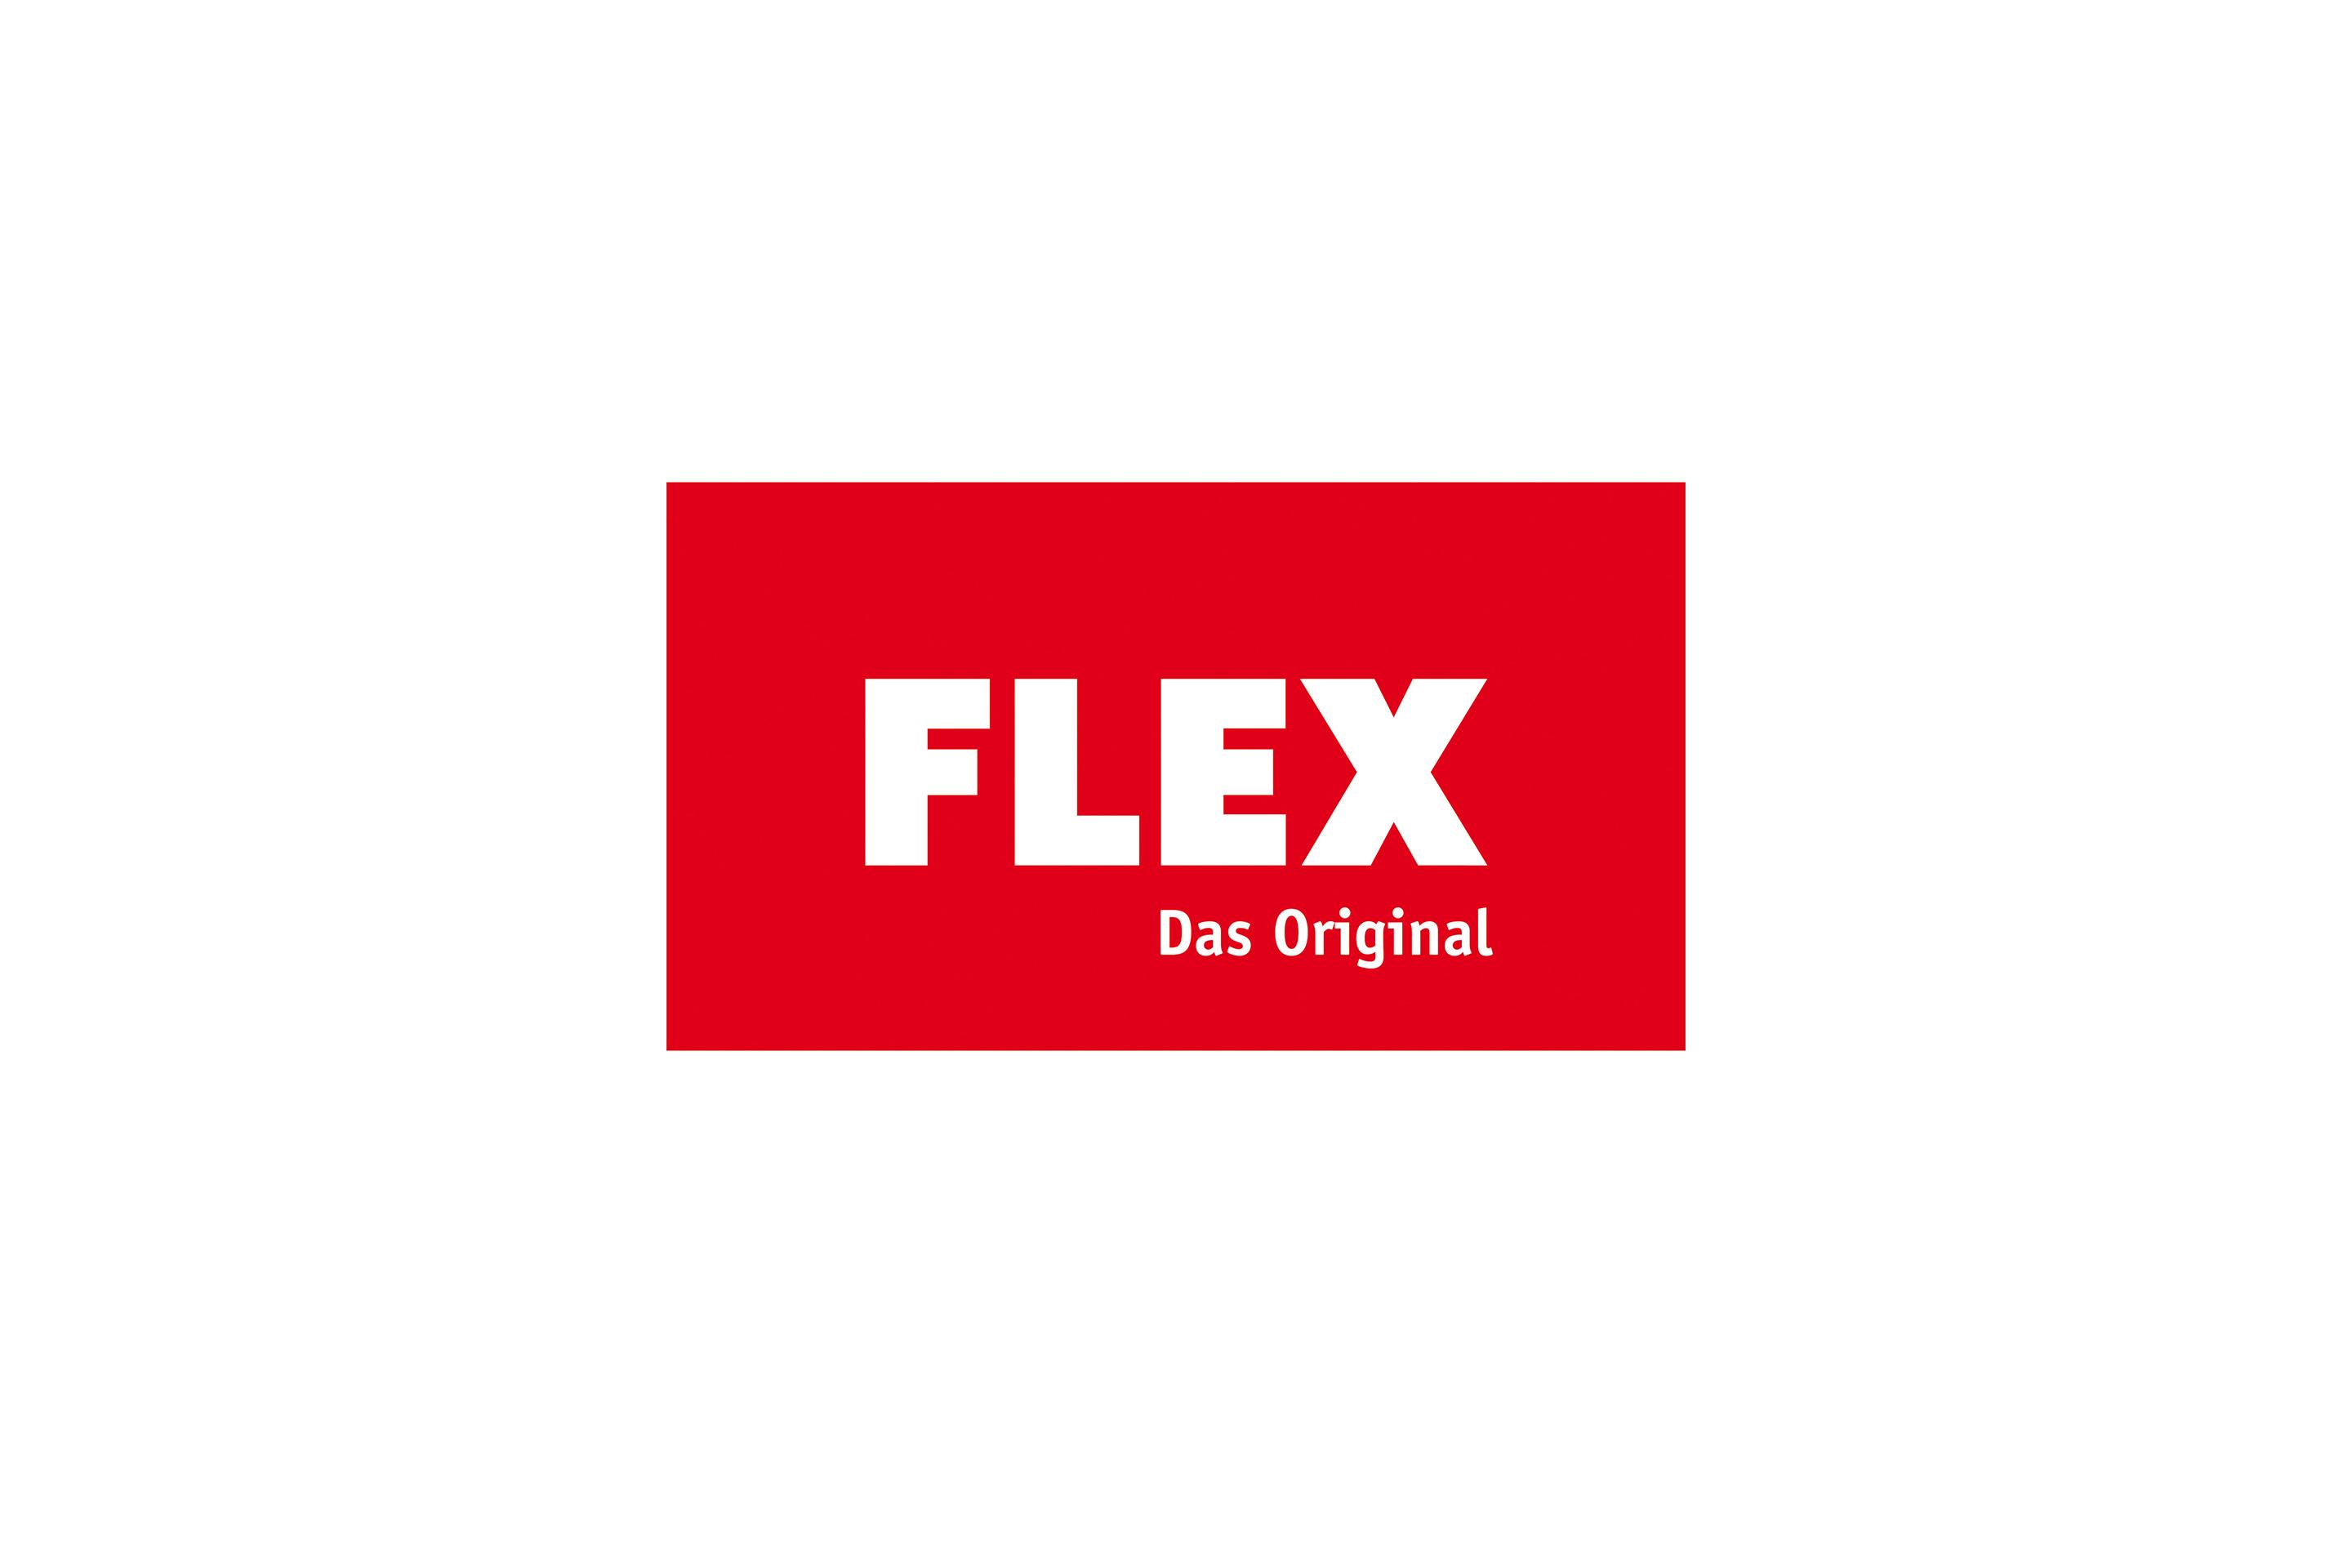 FLEX originallogotypen och historiken